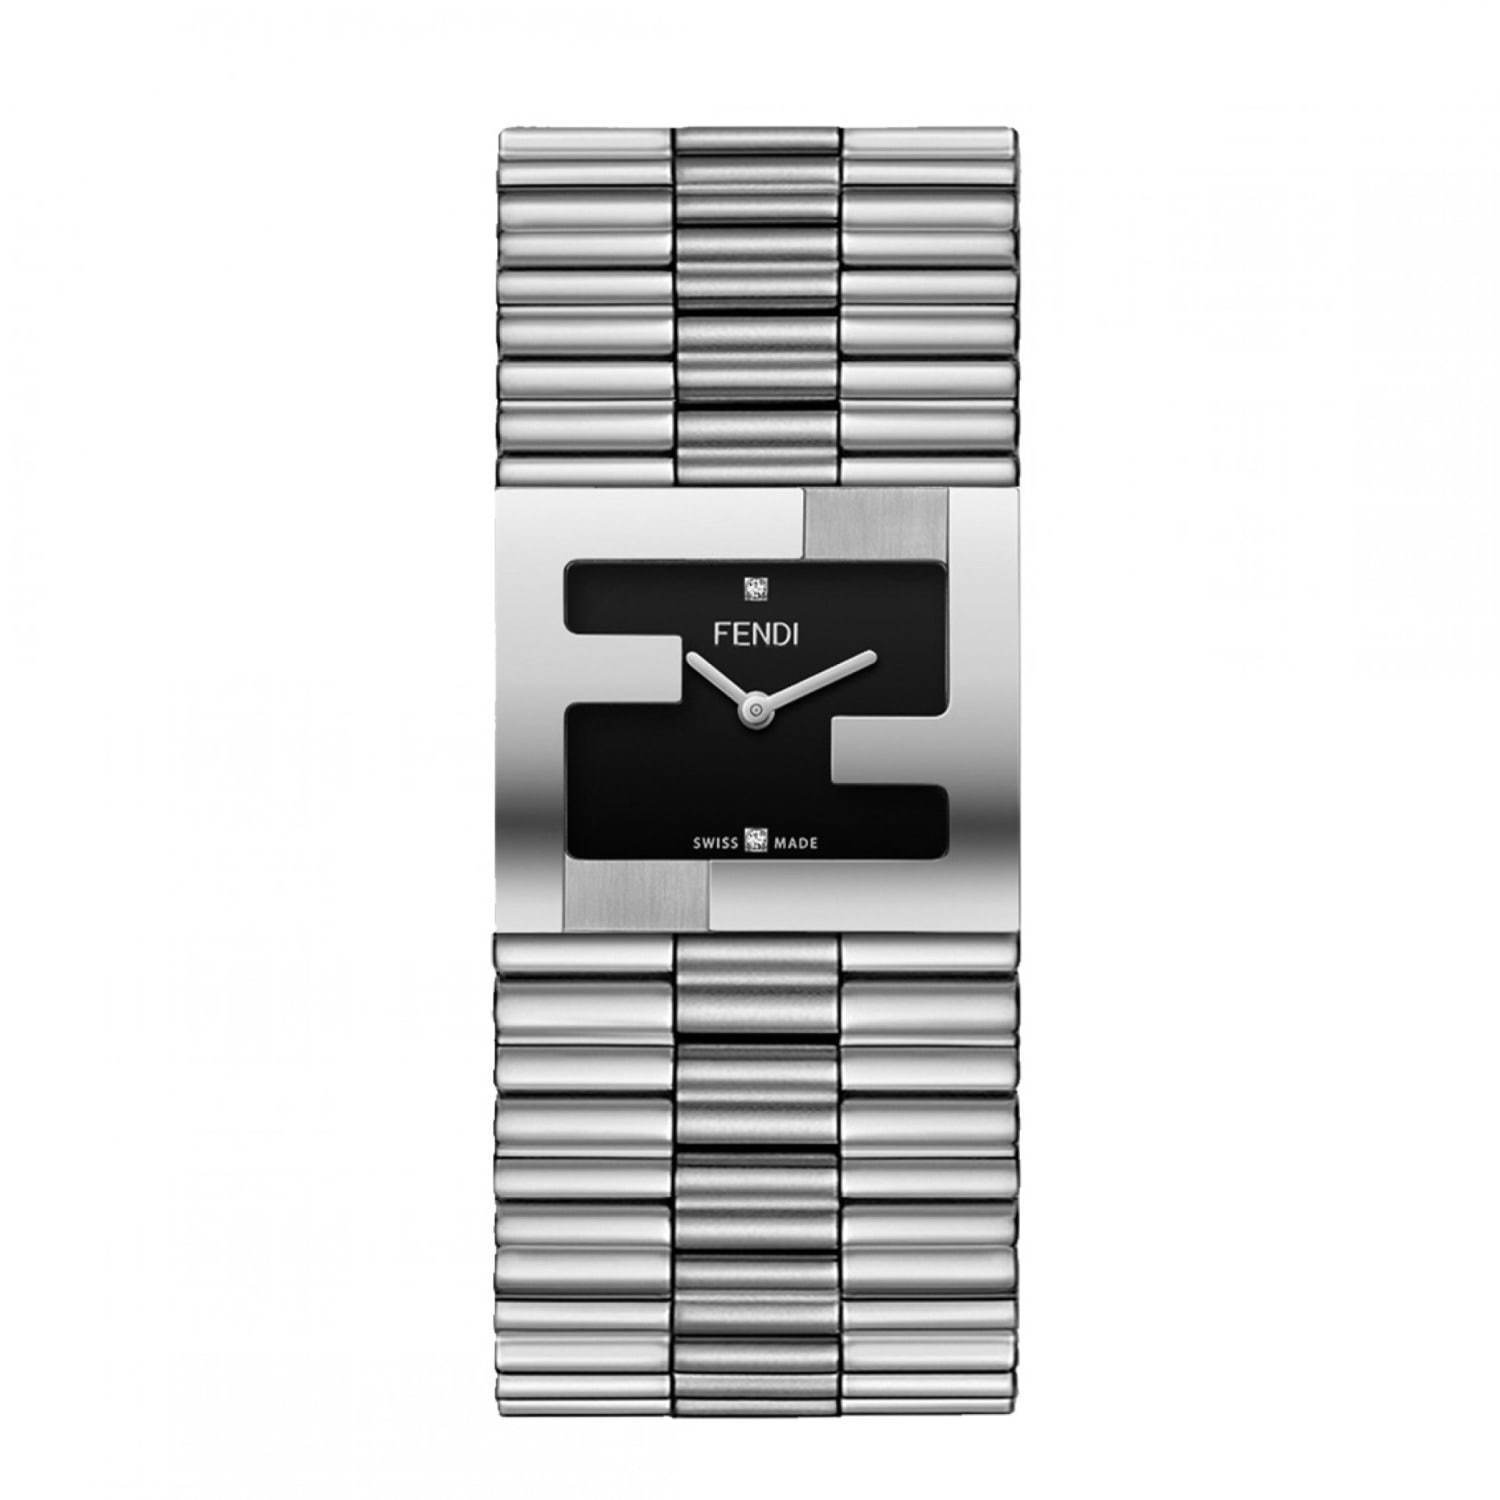 フェンディの新作腕時計「フェンディマニア ブレスレット」“FFロゴ